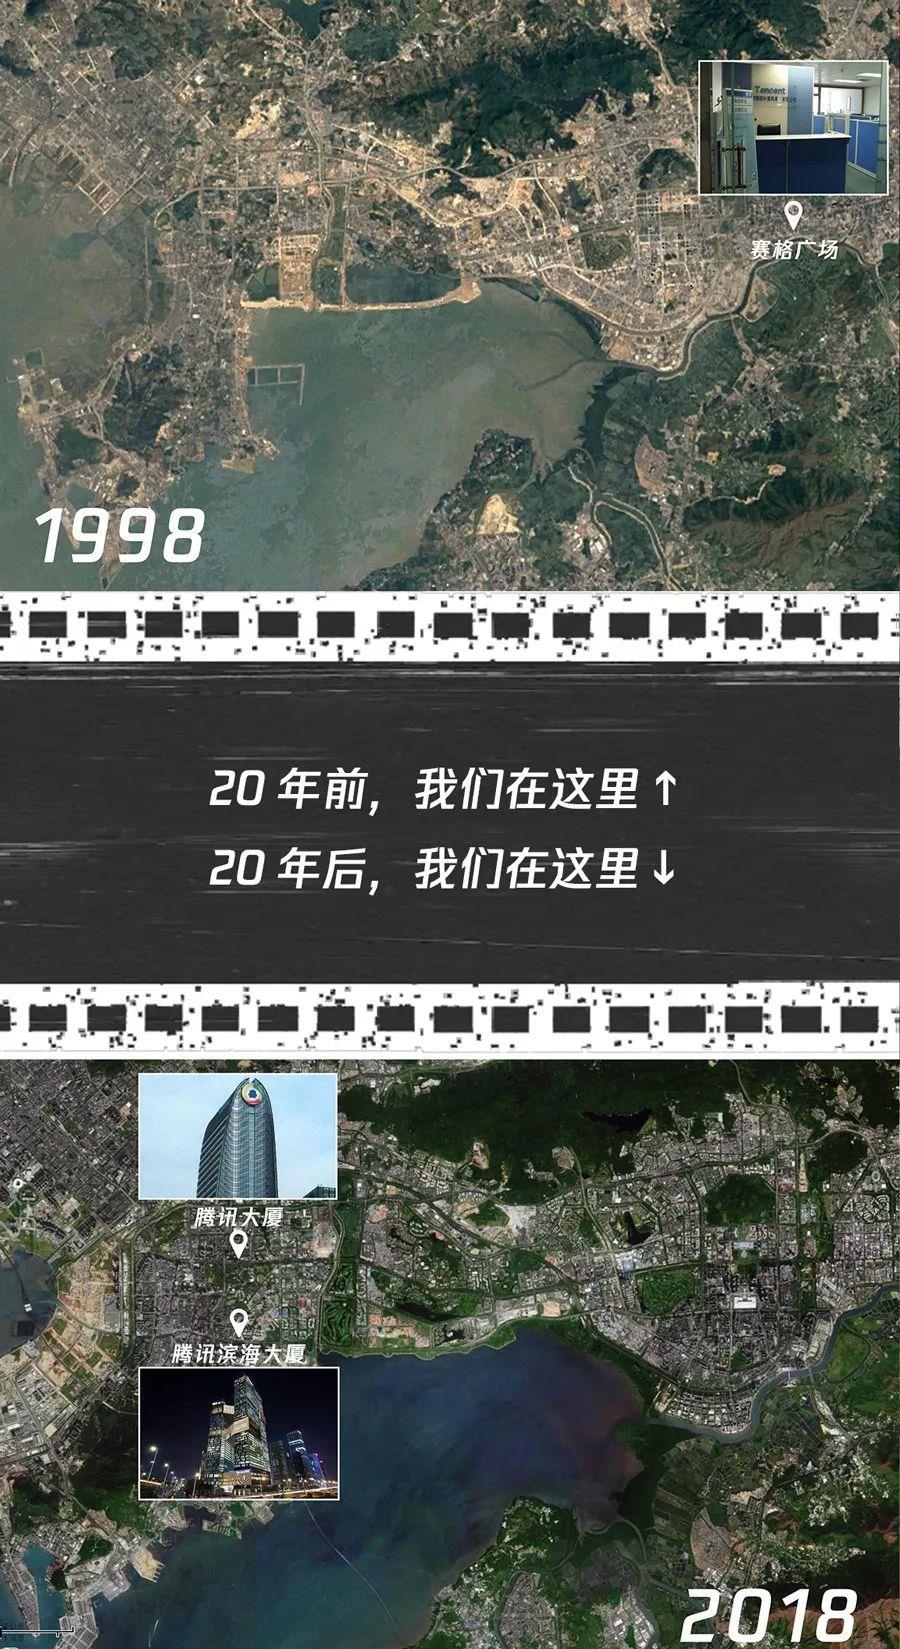 双11腾讯将迎来20岁生日 马化腾20年前的老照片曝光